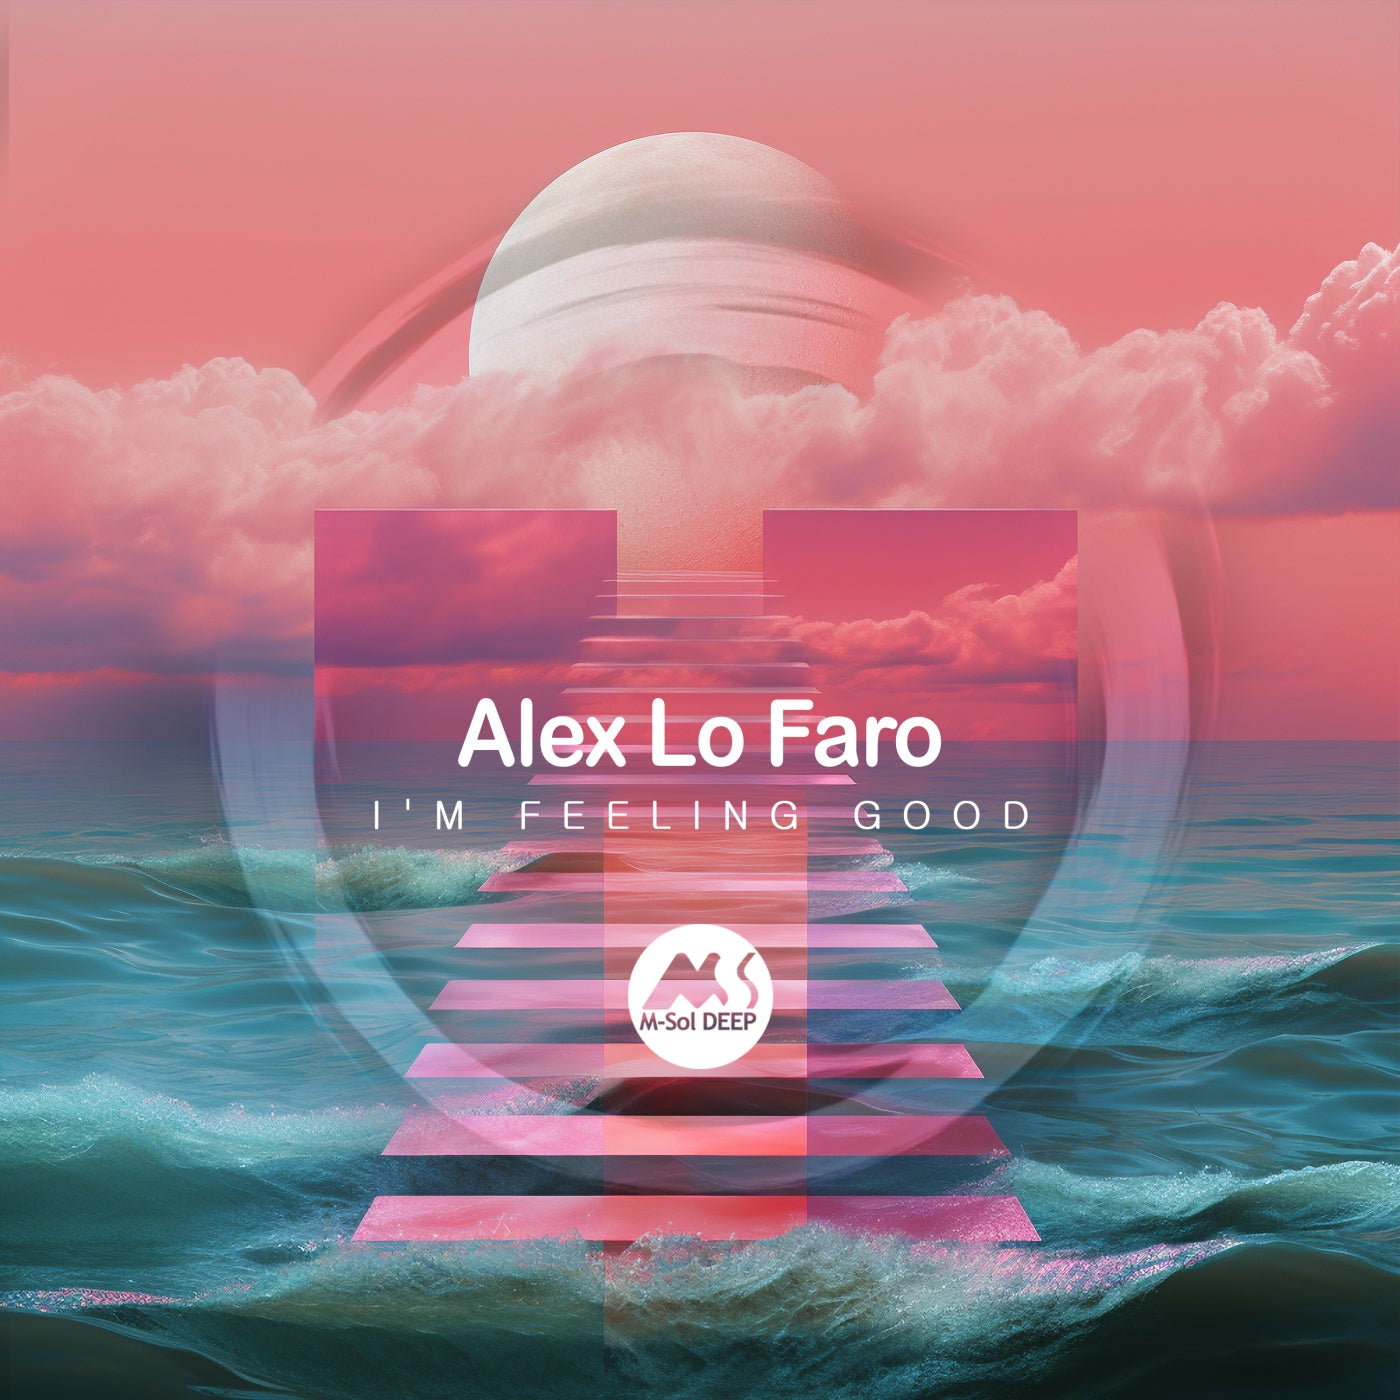 Cover - Alex Lo Faro, M-Sol DEEP - I'm Feeling Good (Original Mix)